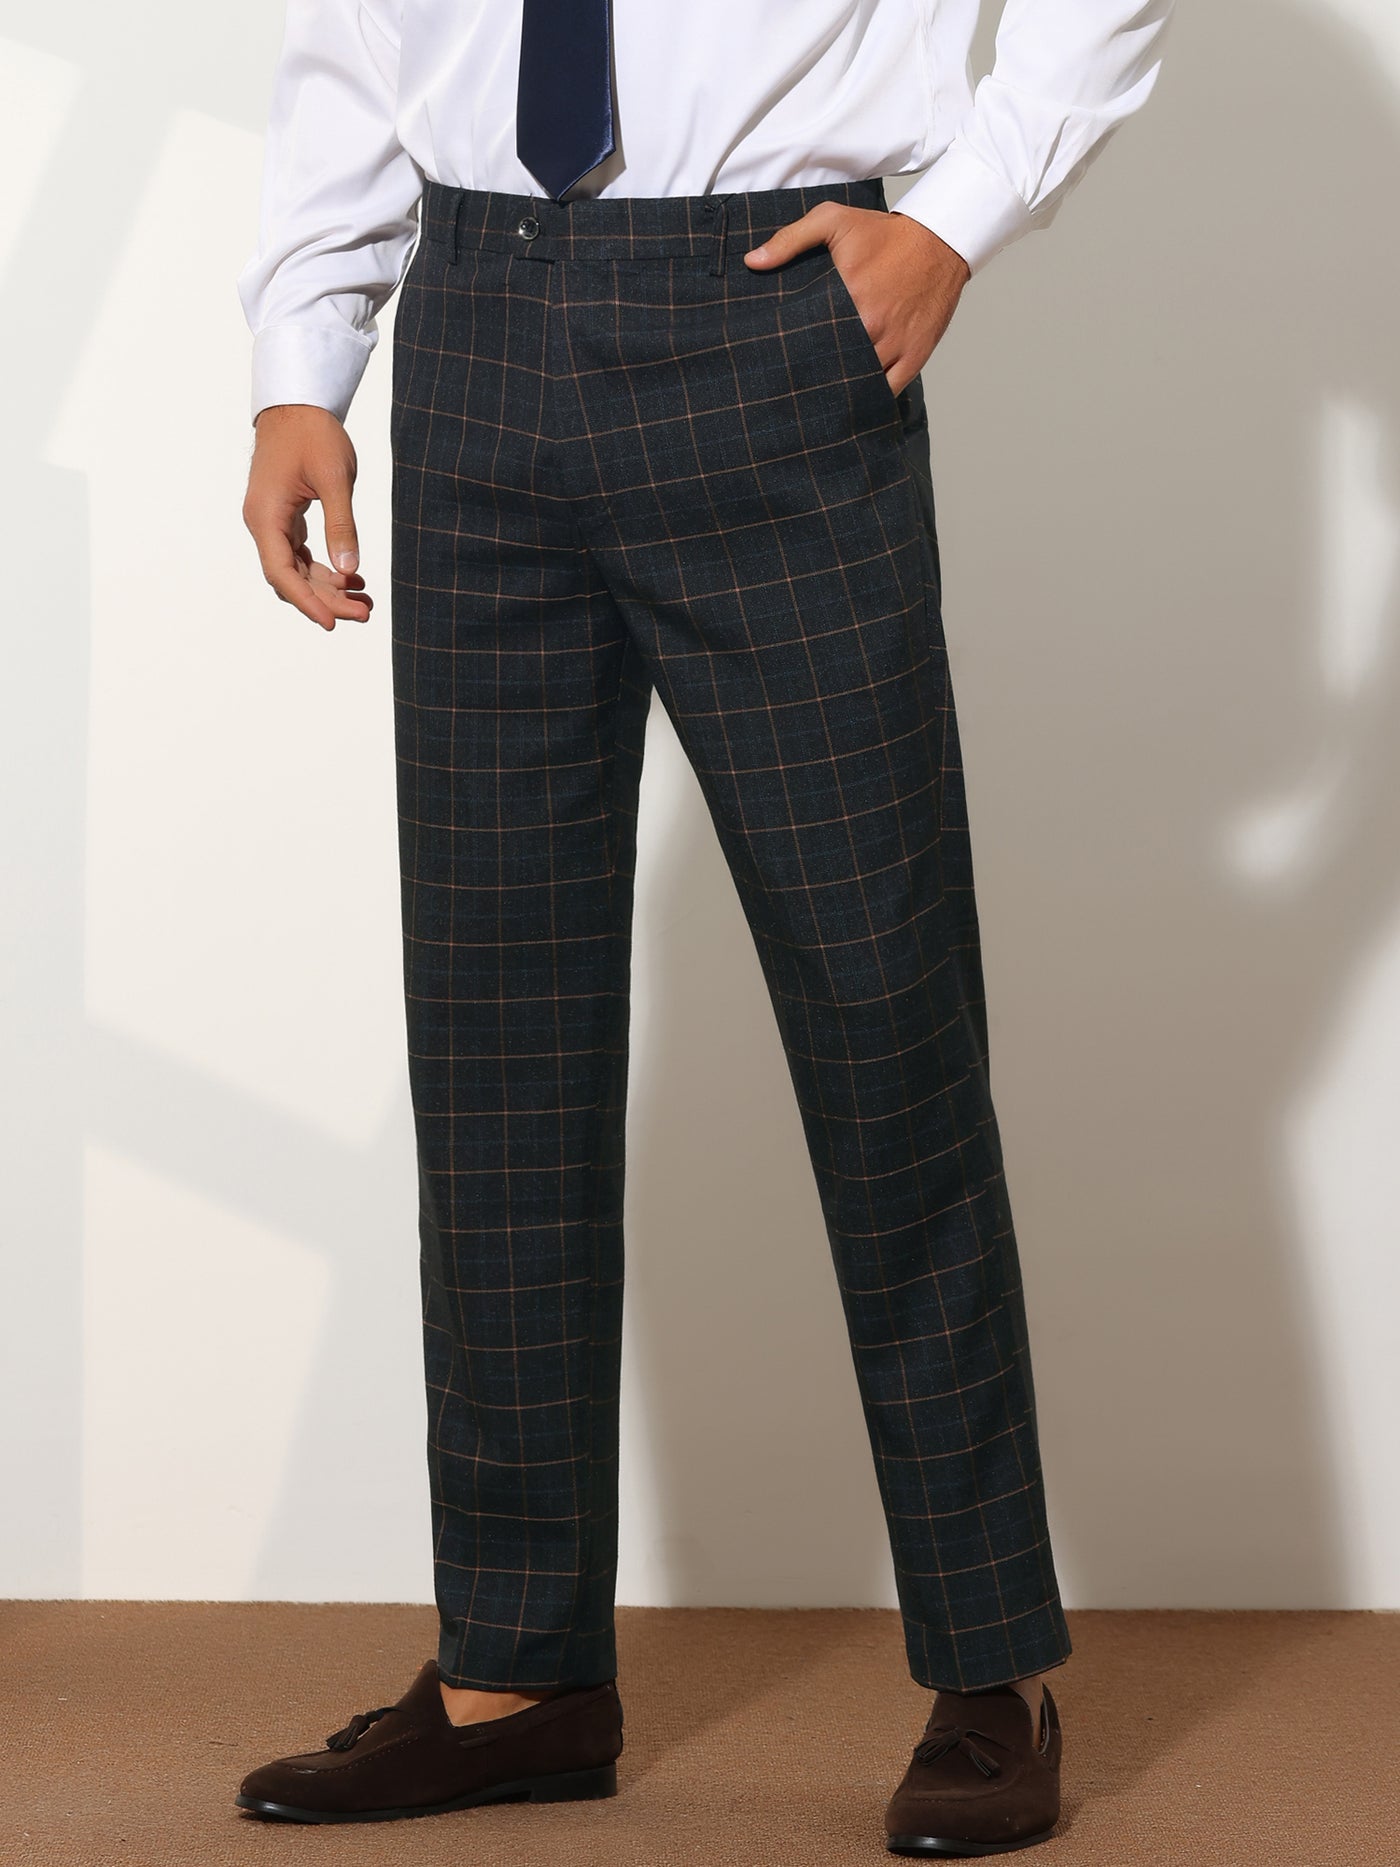 Bublédon Men's Plaid Slim Fit Formal Flat Front Checkered Suit Dress Pants